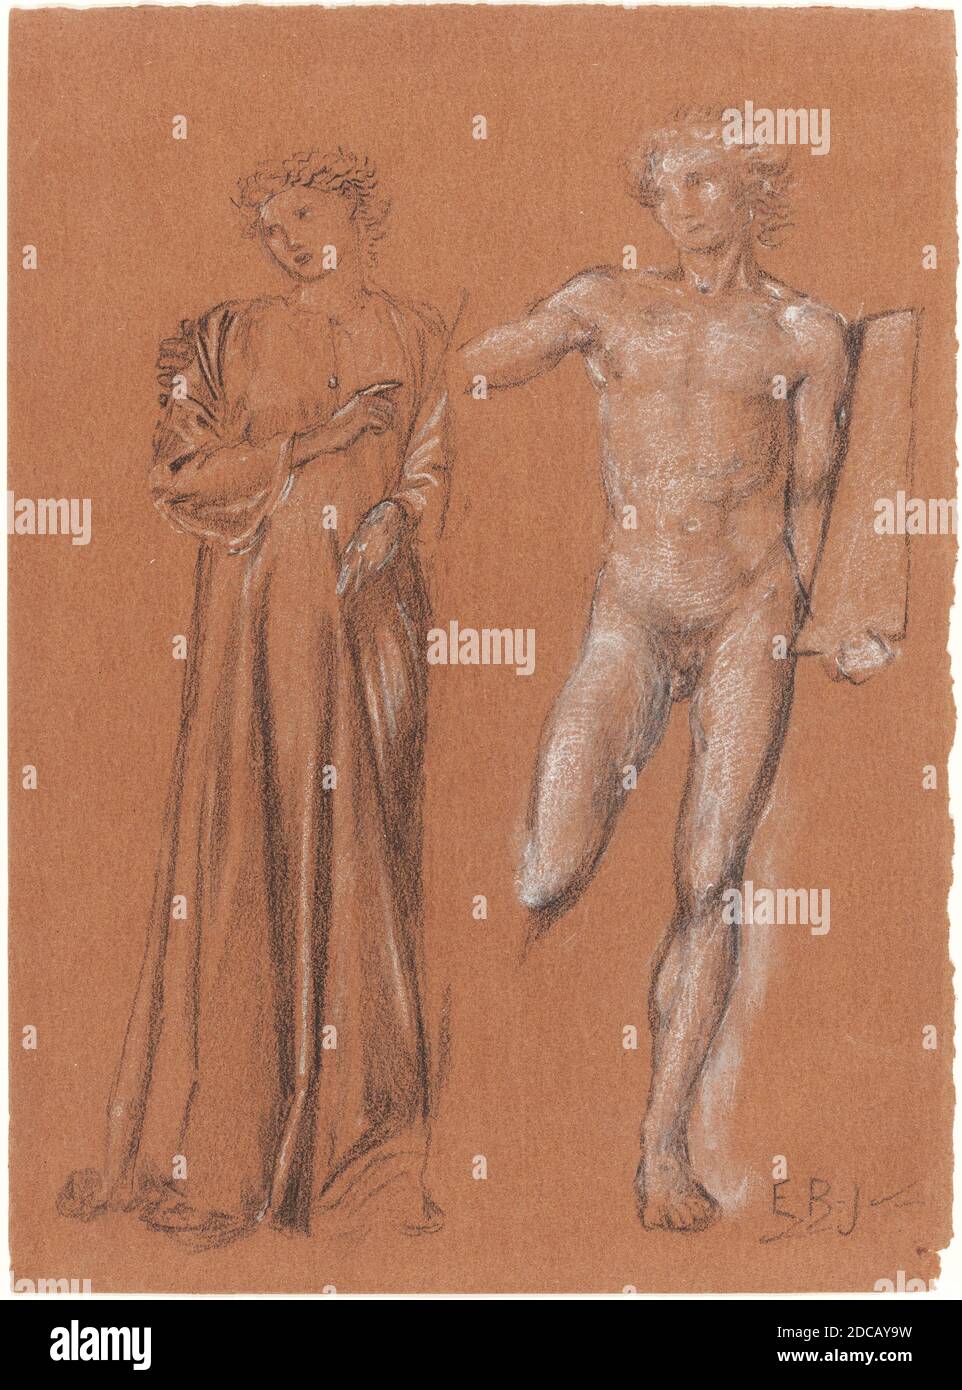 Sir Edward Coley Burne-Jones, (artiste), Britannique, 1833 - 1898, Orpheus et Eurydice, craie noire et blanche avec des traces de graphite sur papier brun, total: 35.6 x 26.3 cm (14 x 10 3/8 po Banque D'Images